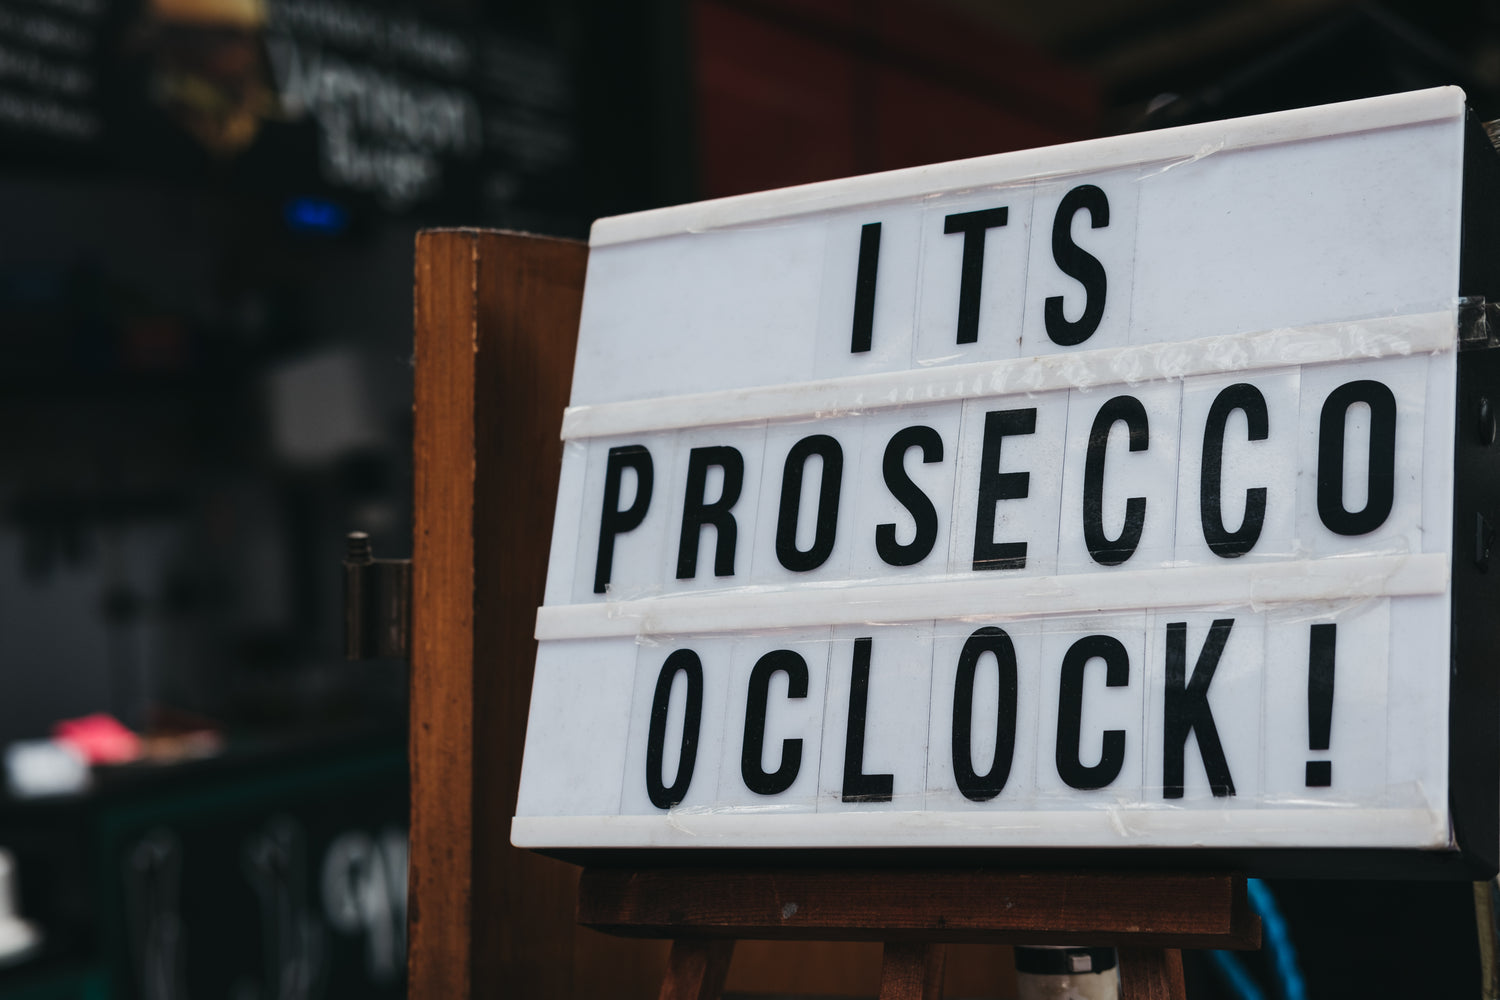 It's prosecco o'clock!